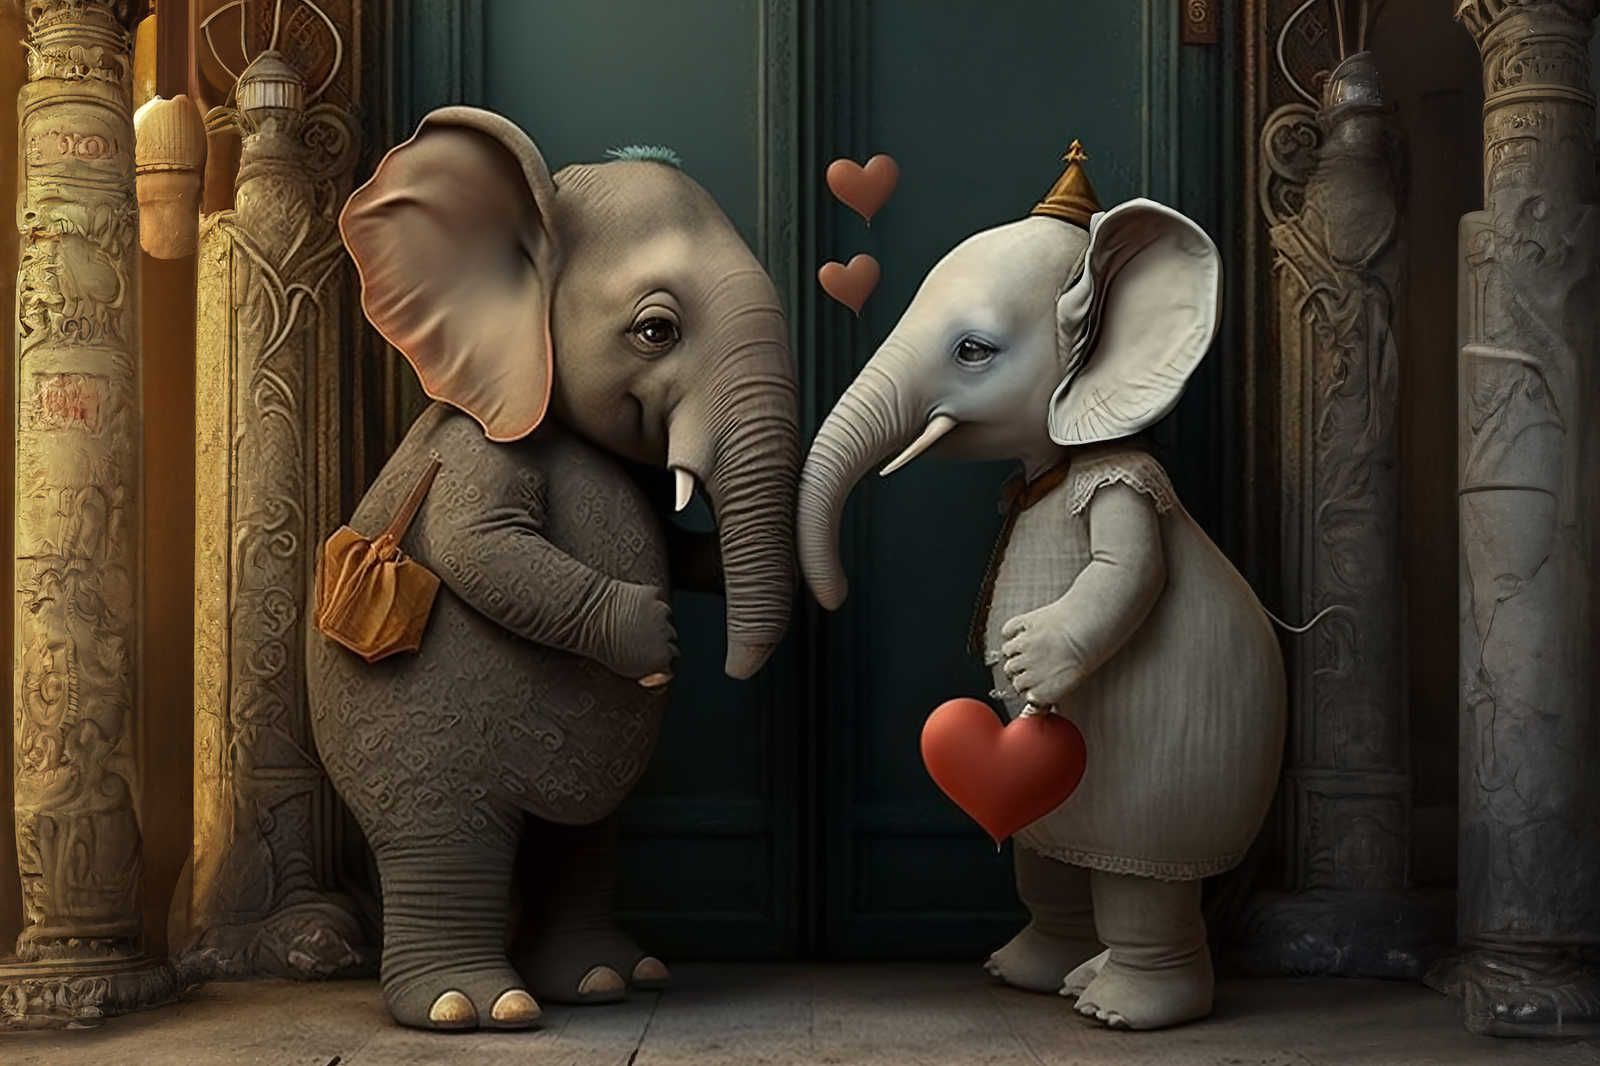             Cuadro KI »amor de elefante« - 90 cm x 60 cm
        